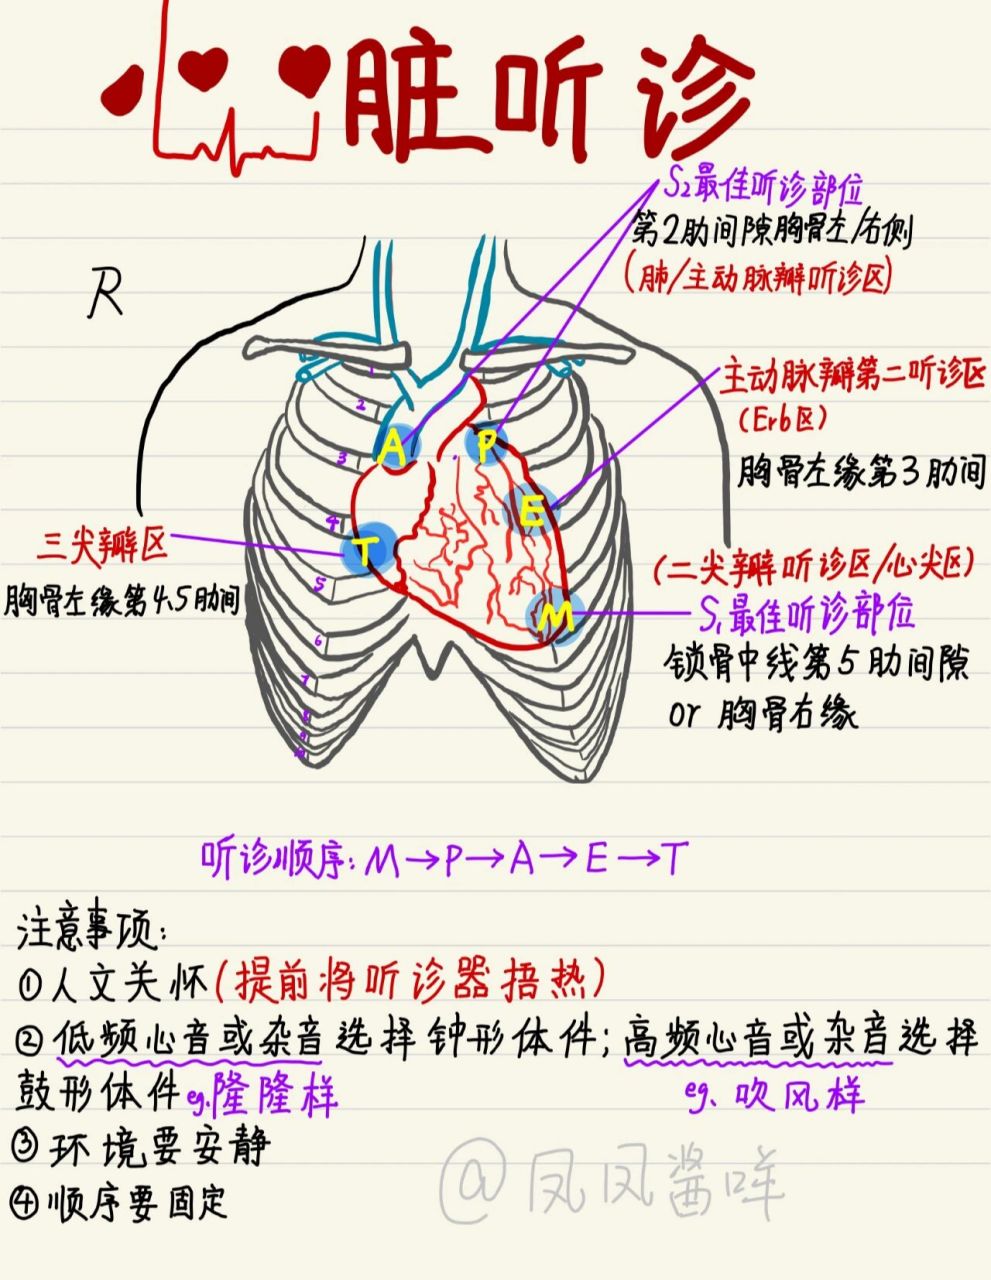 心脏听诊体表位置图片